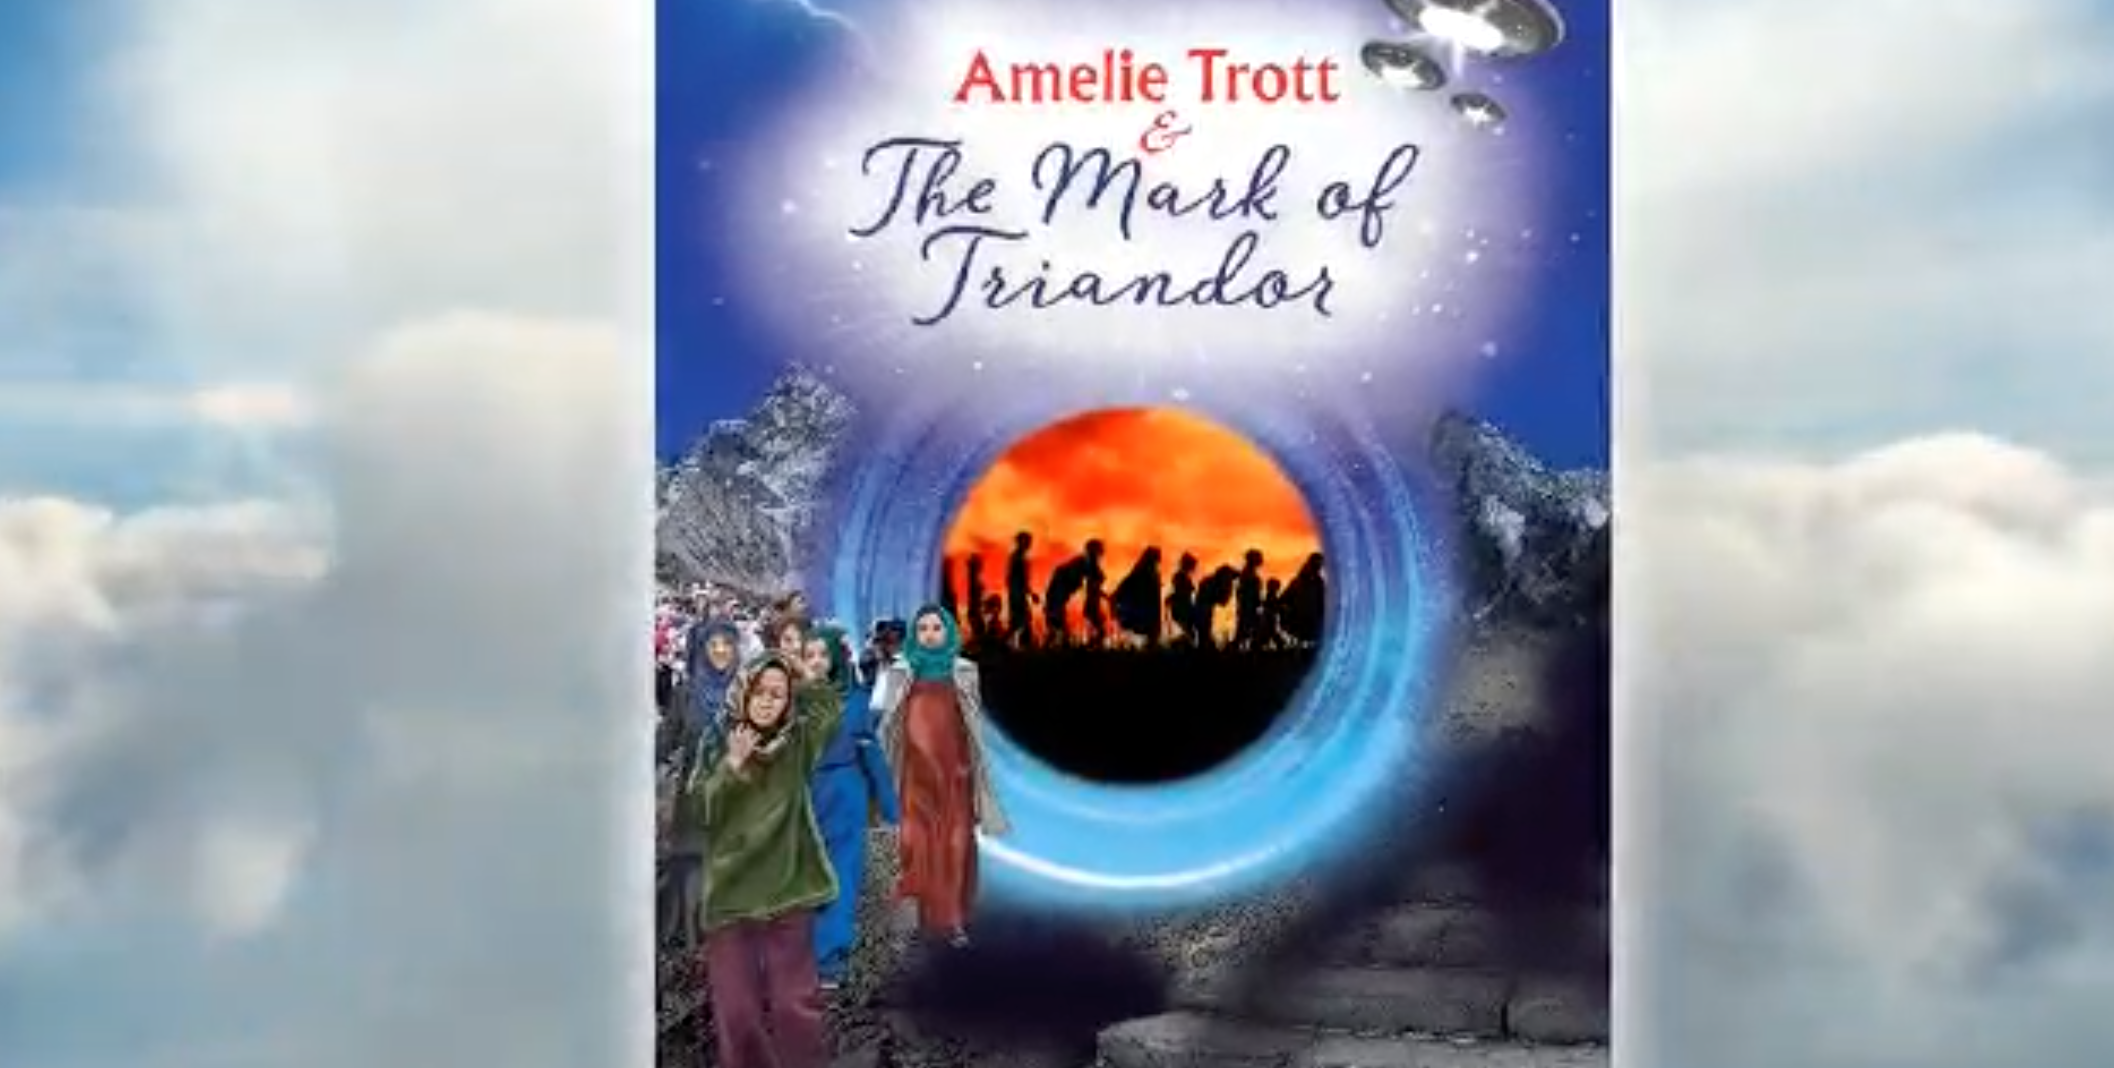 Amelie Trott The Mask of Triandor